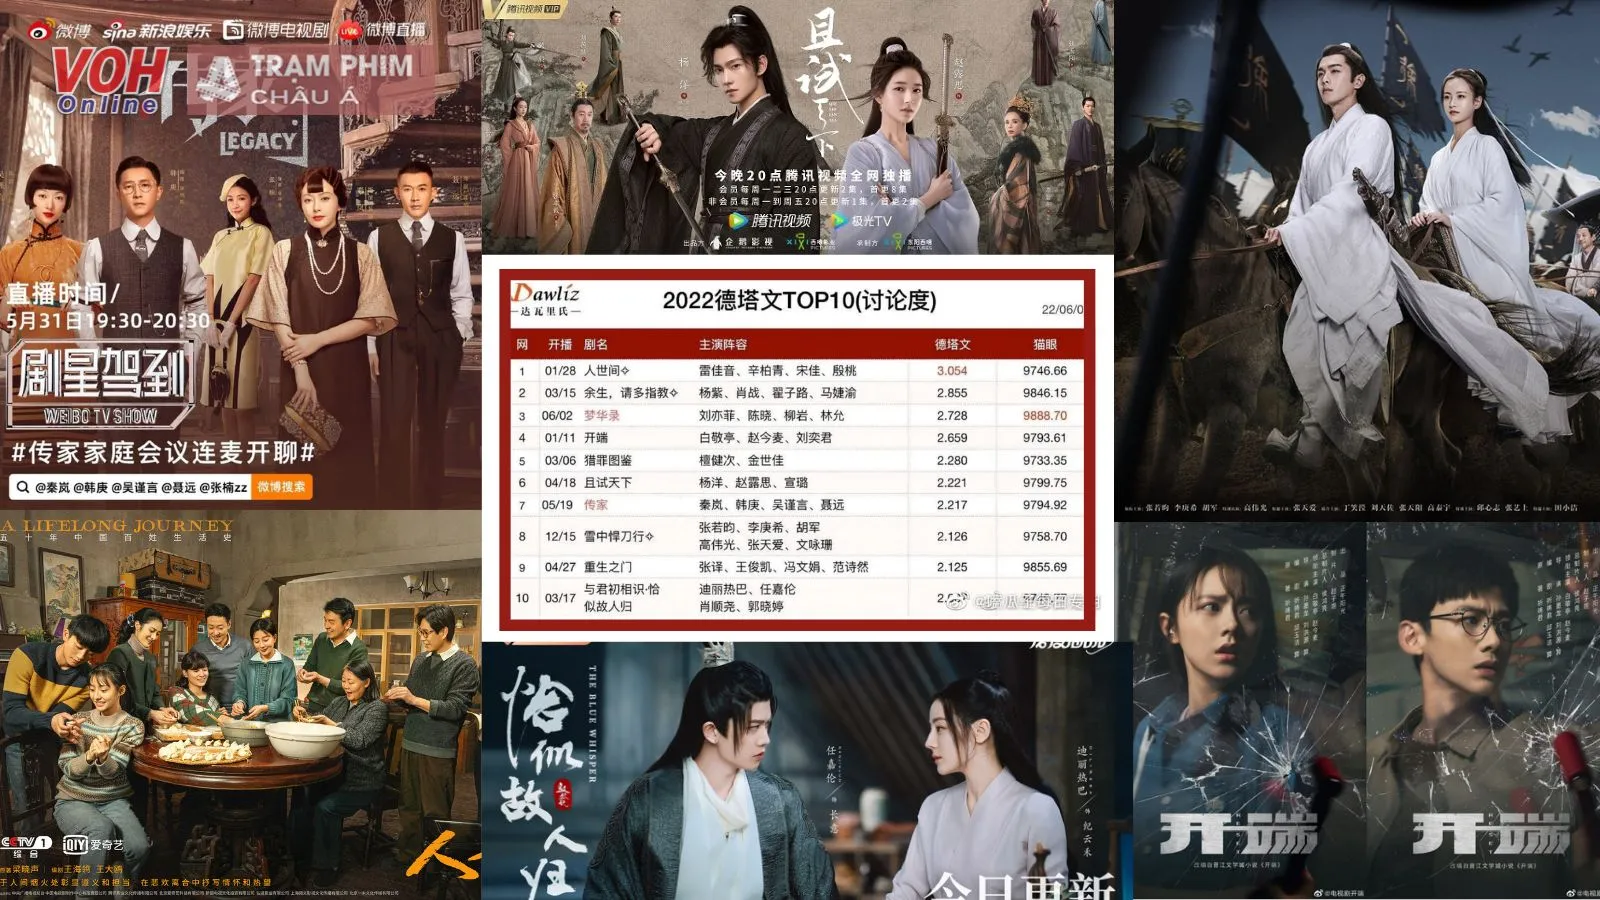 Top 10 phim Hoa Ngữ nửa đầu năm 2022 được bàn luận nhiều nhất tại DATAWIN